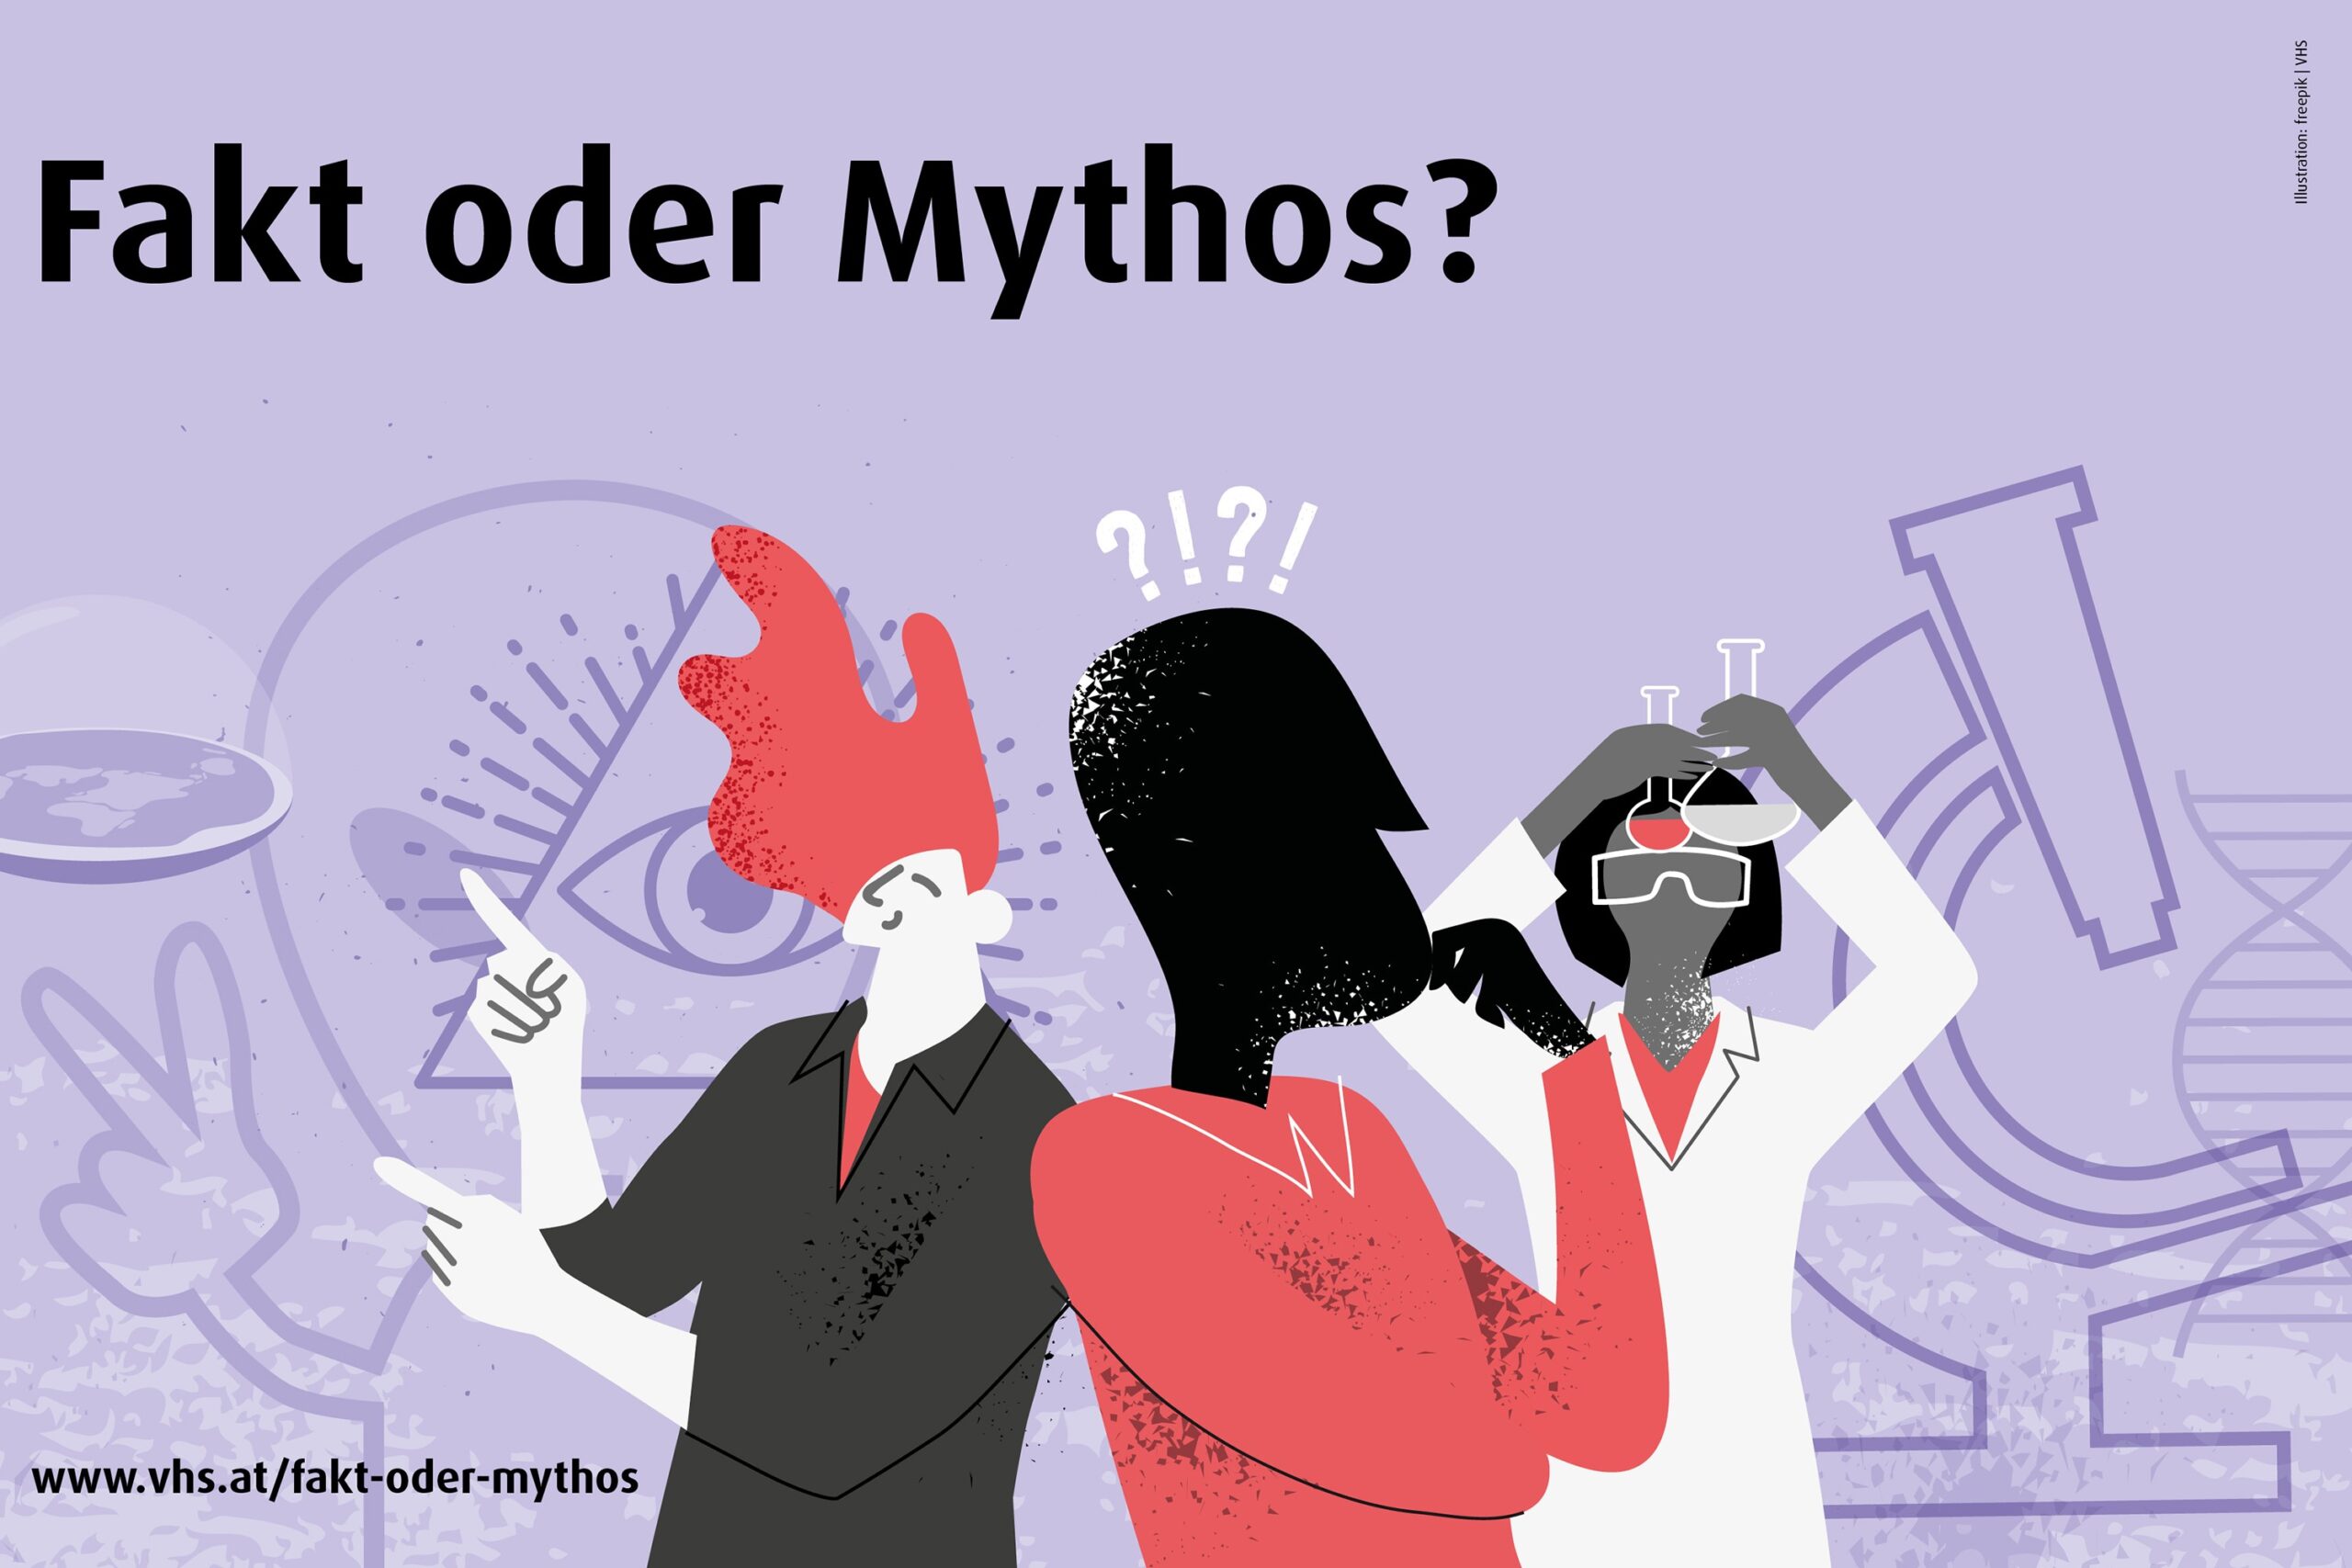 Fakt oder Mythos? Wie sich falsche Gesundheitsbehauptungen erkennen lassen